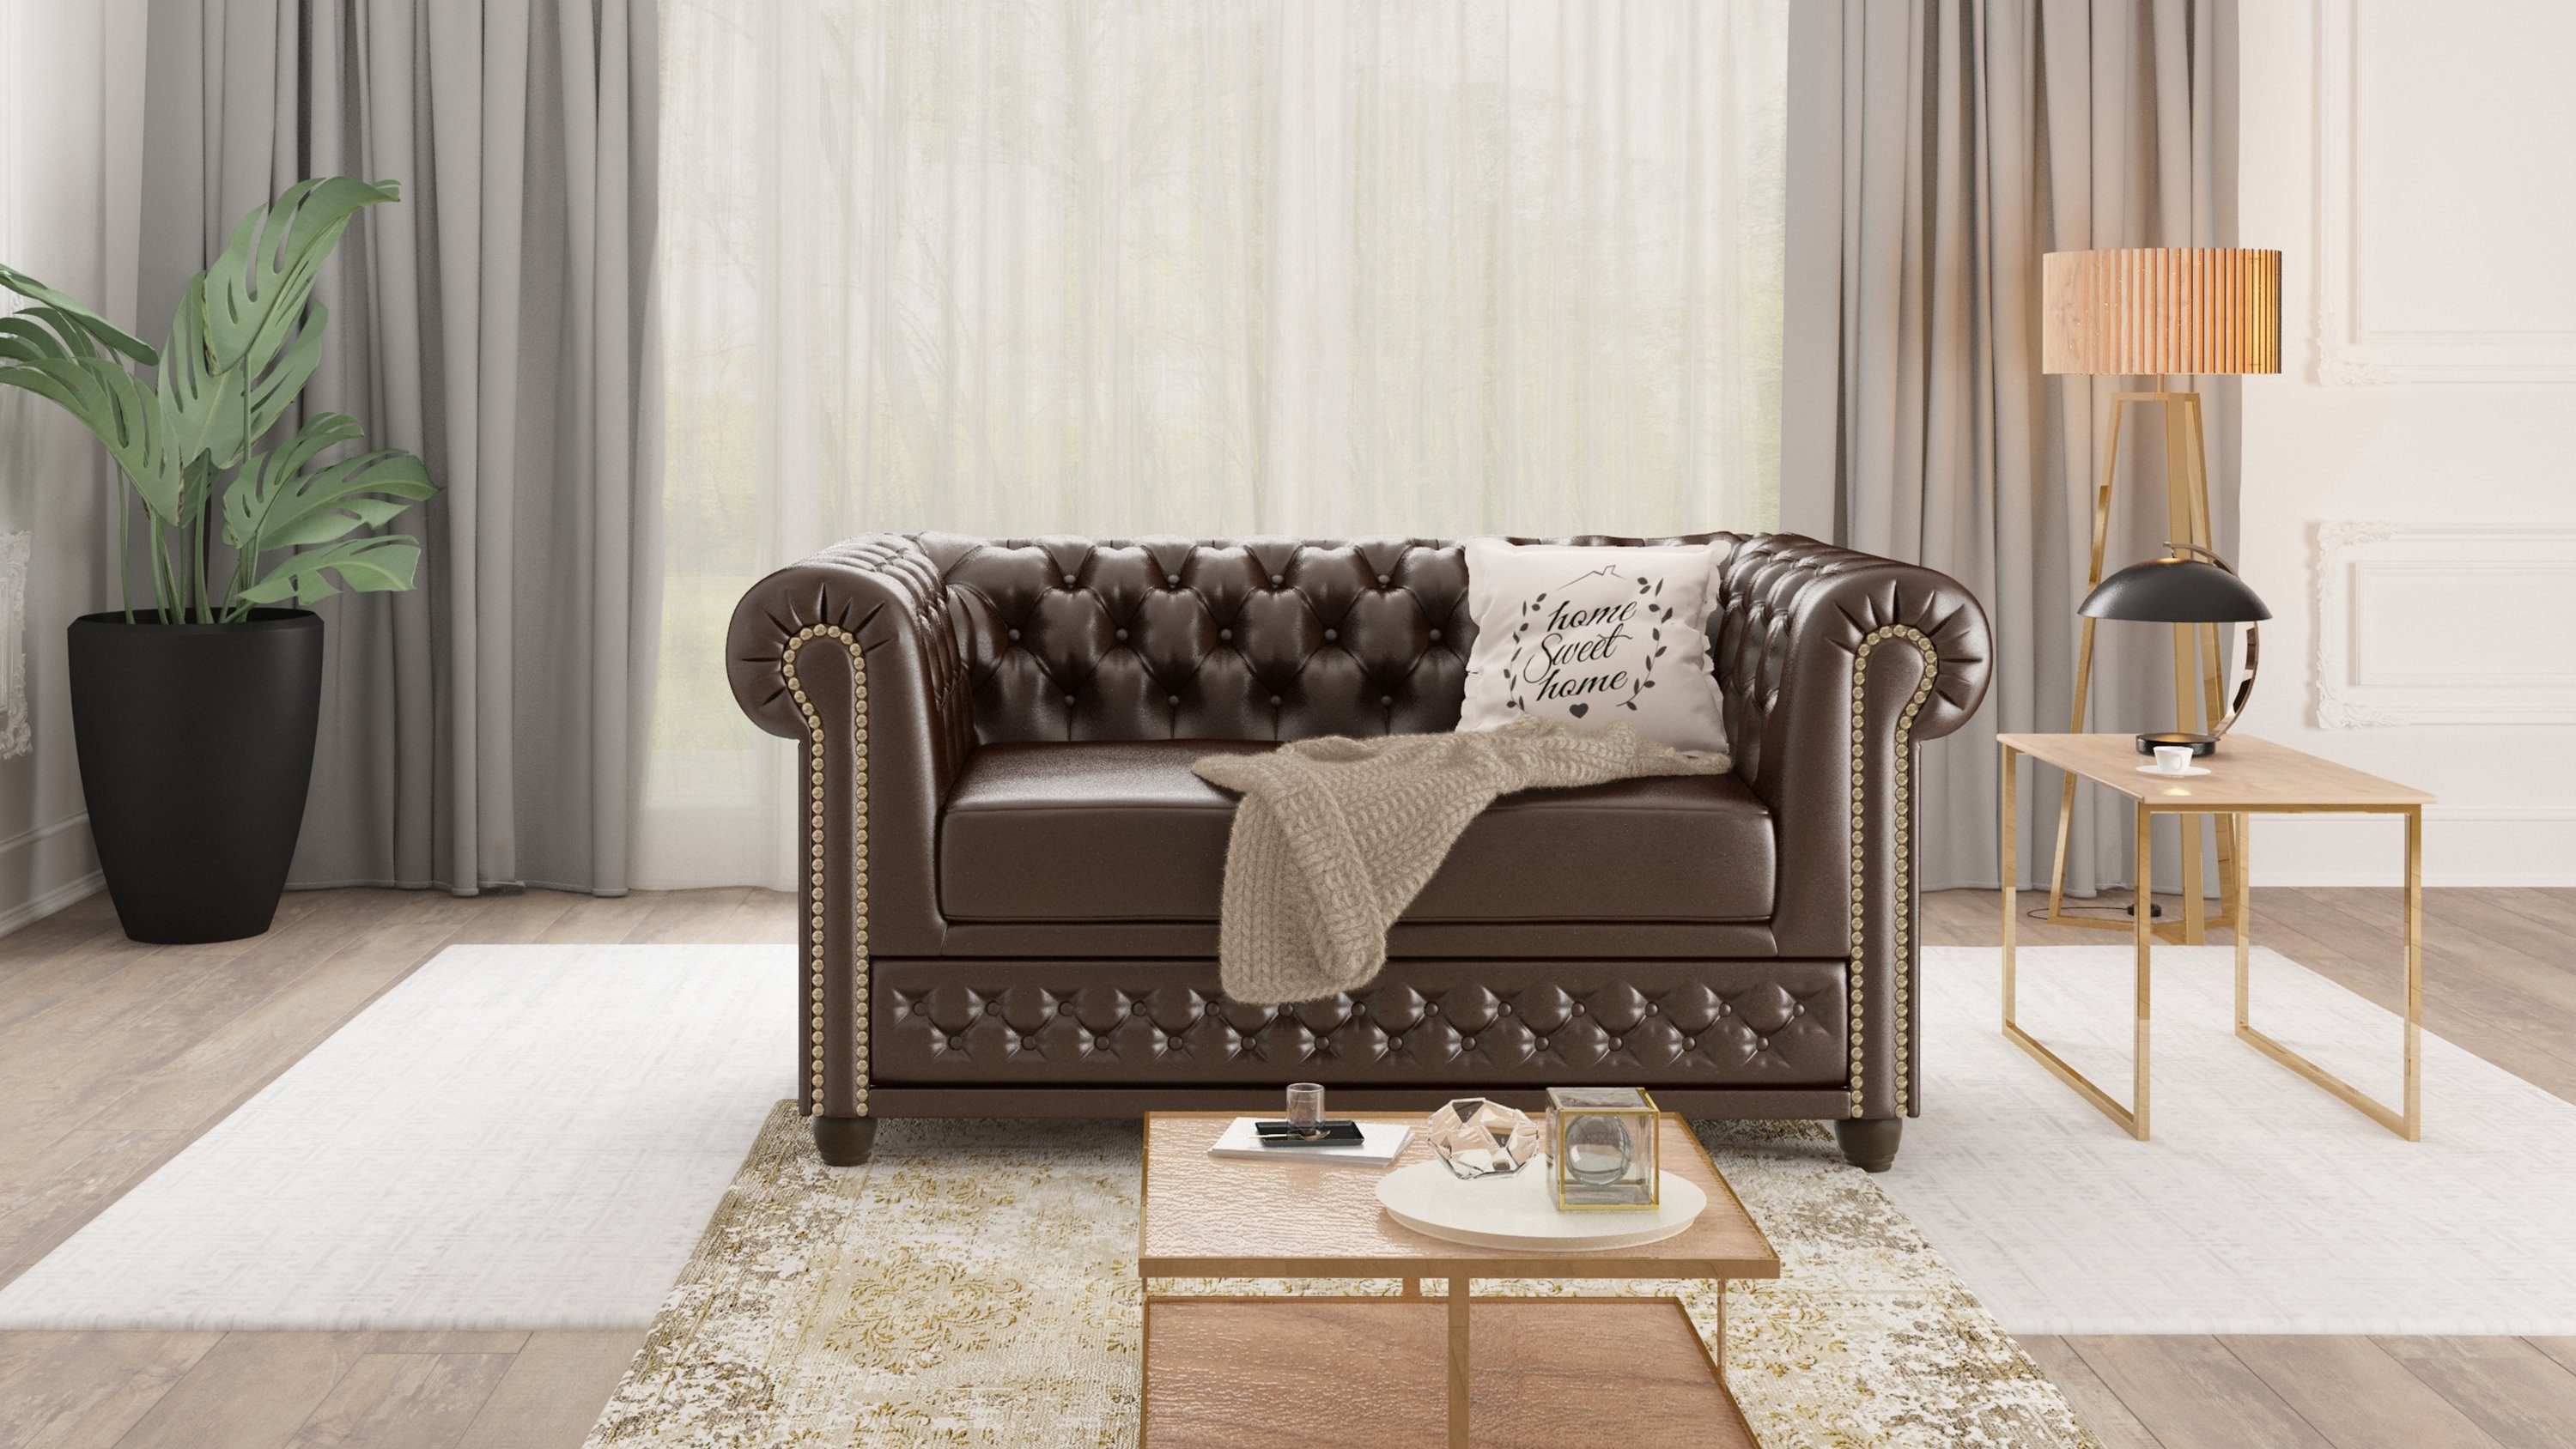 Jeff mit Wellenfederung 2-Sitzer Chesterfield Braun S-Style Sofa, Möbel